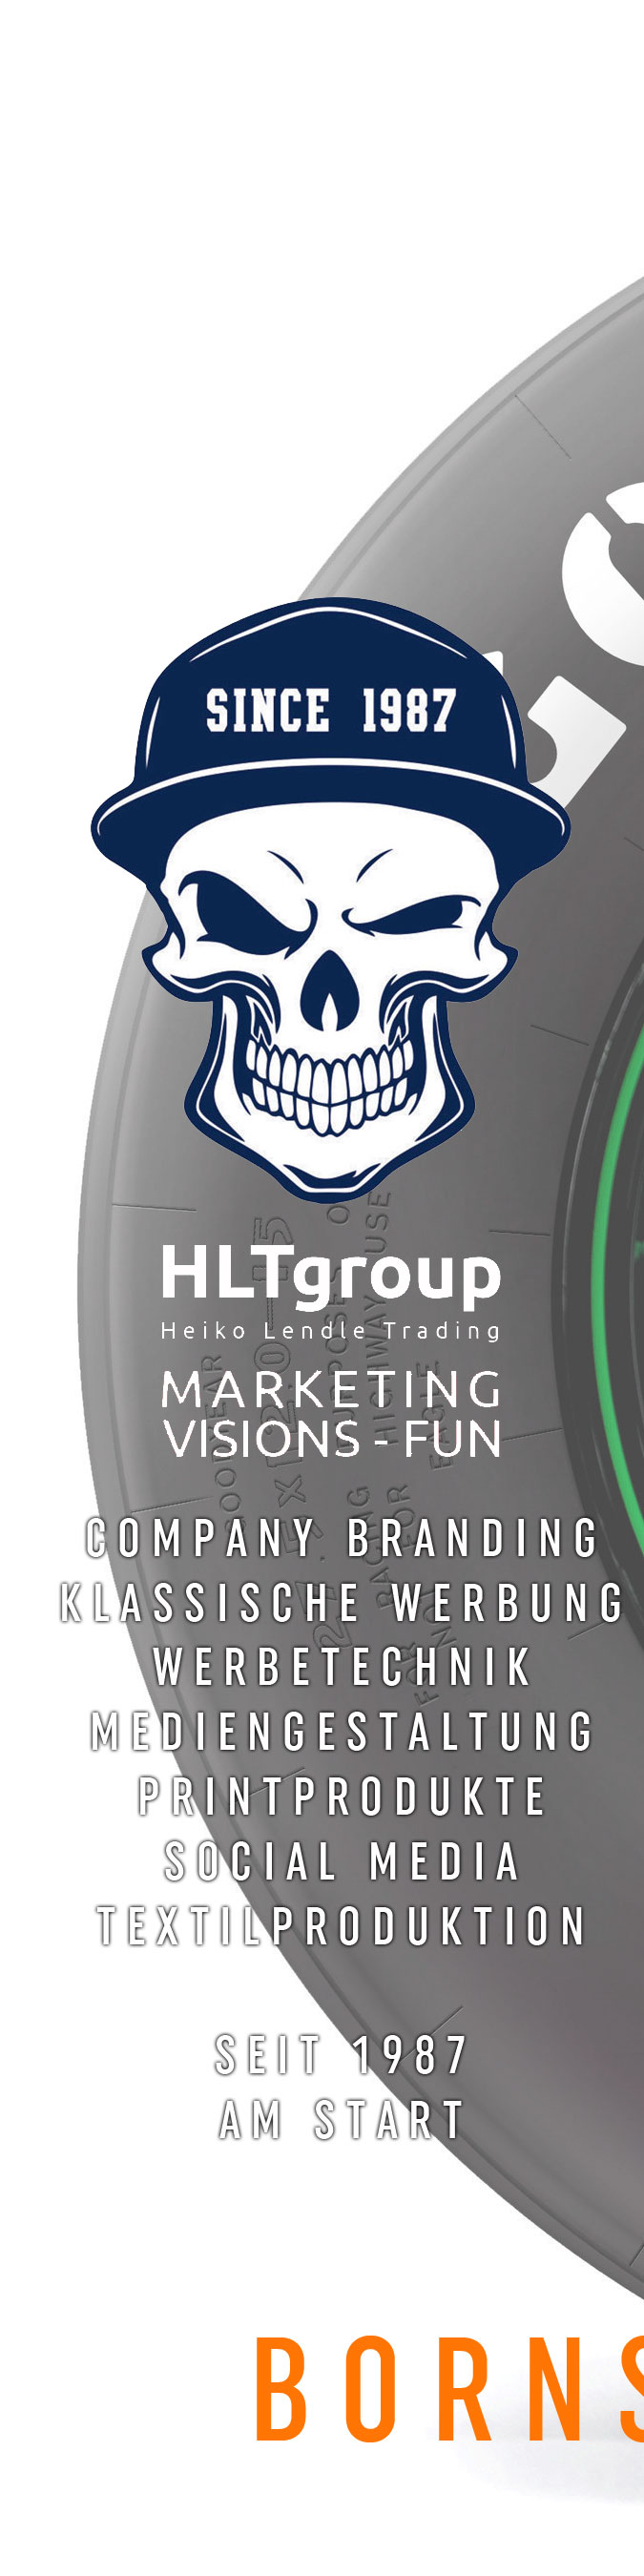 HLTgroup Werbeagentur